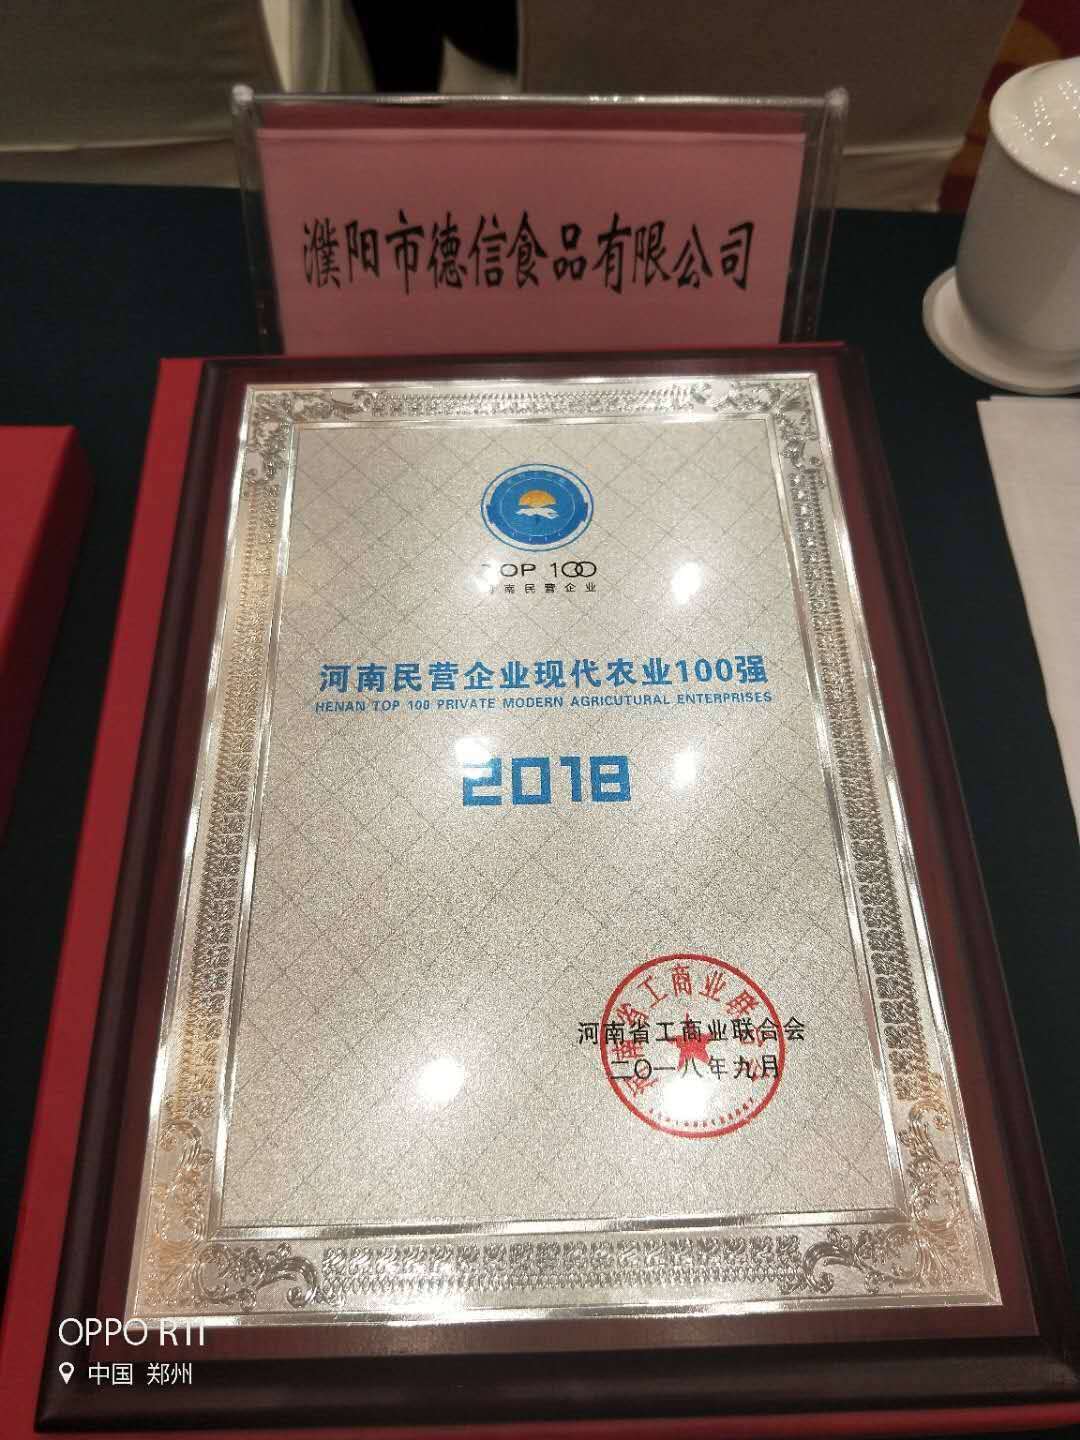 2018年被授予河南民營企業現代企業100強